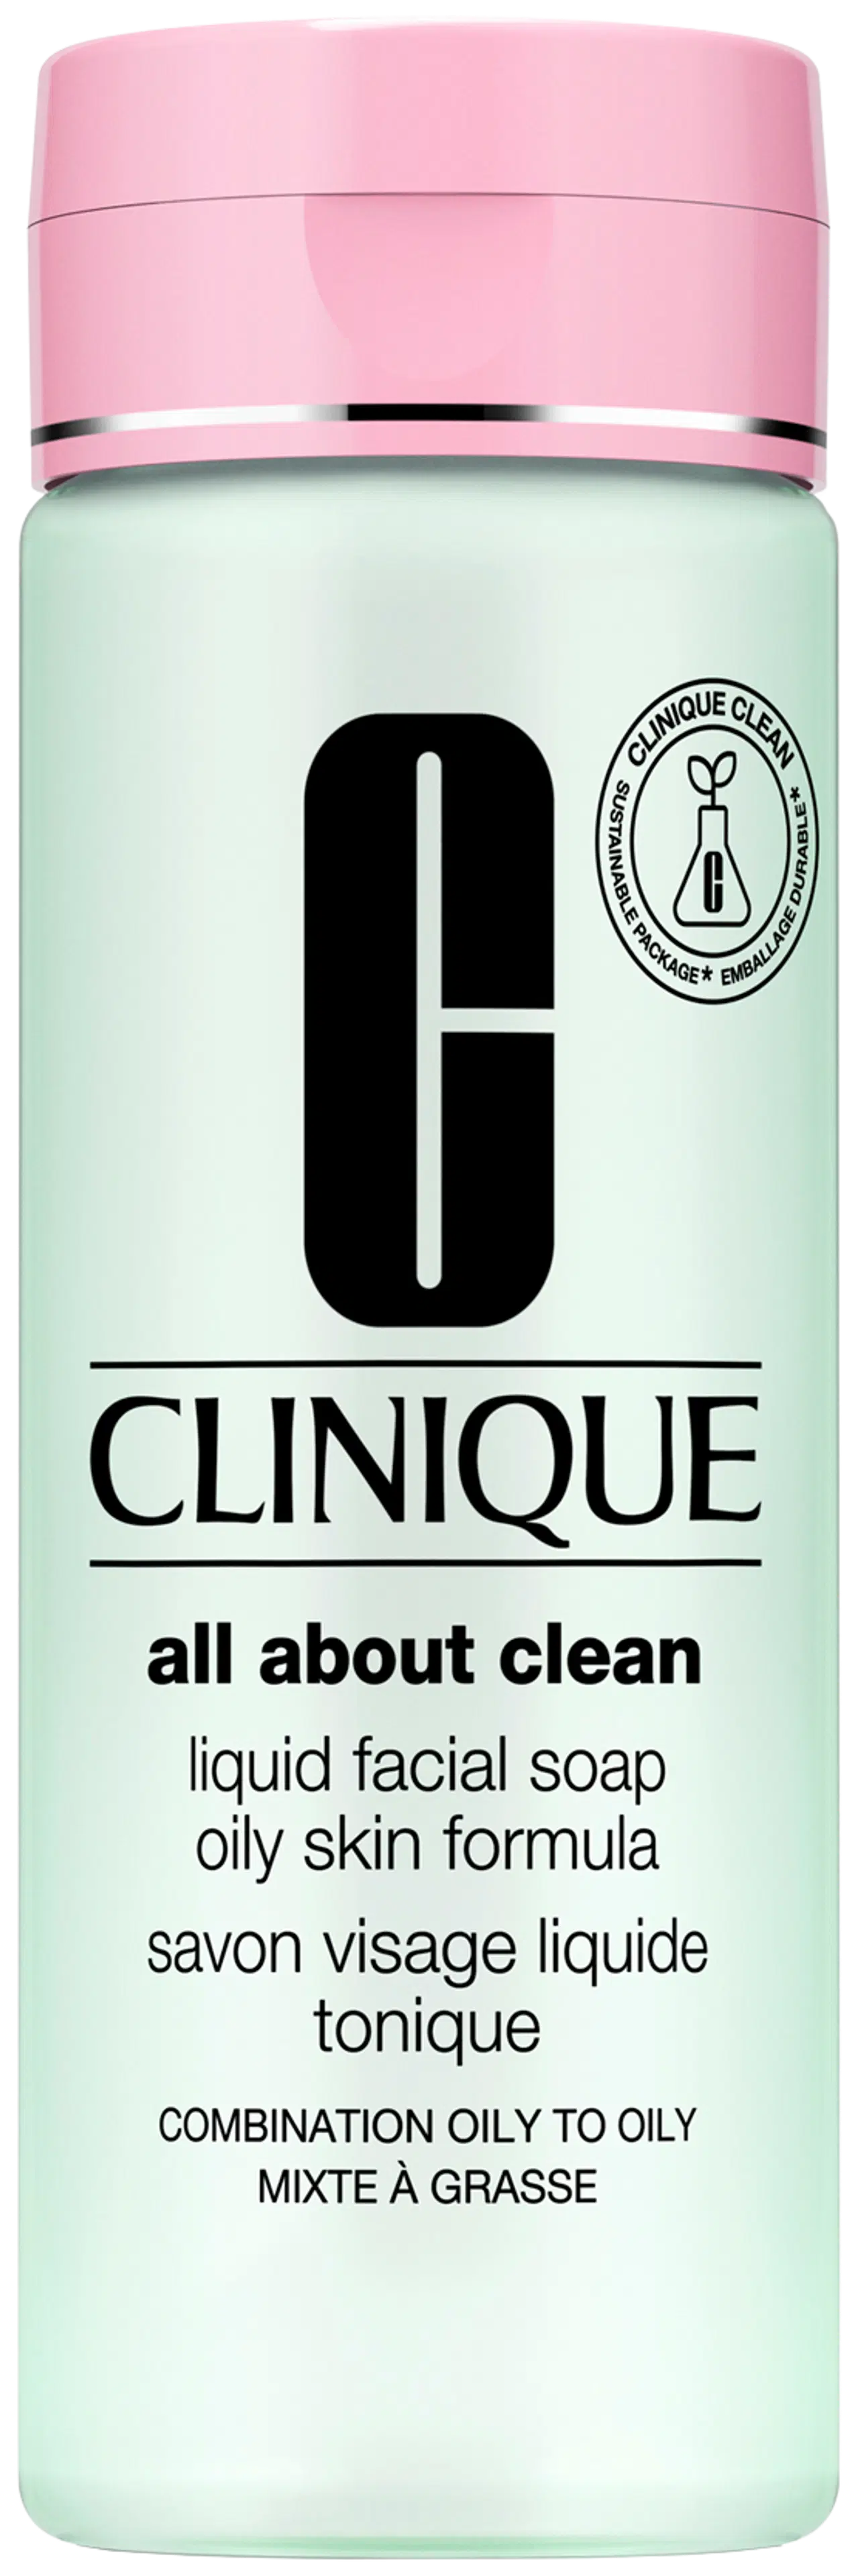 Clinique Liquid Facial Soap Oily Skin Formula kasvosaippua 200 ml